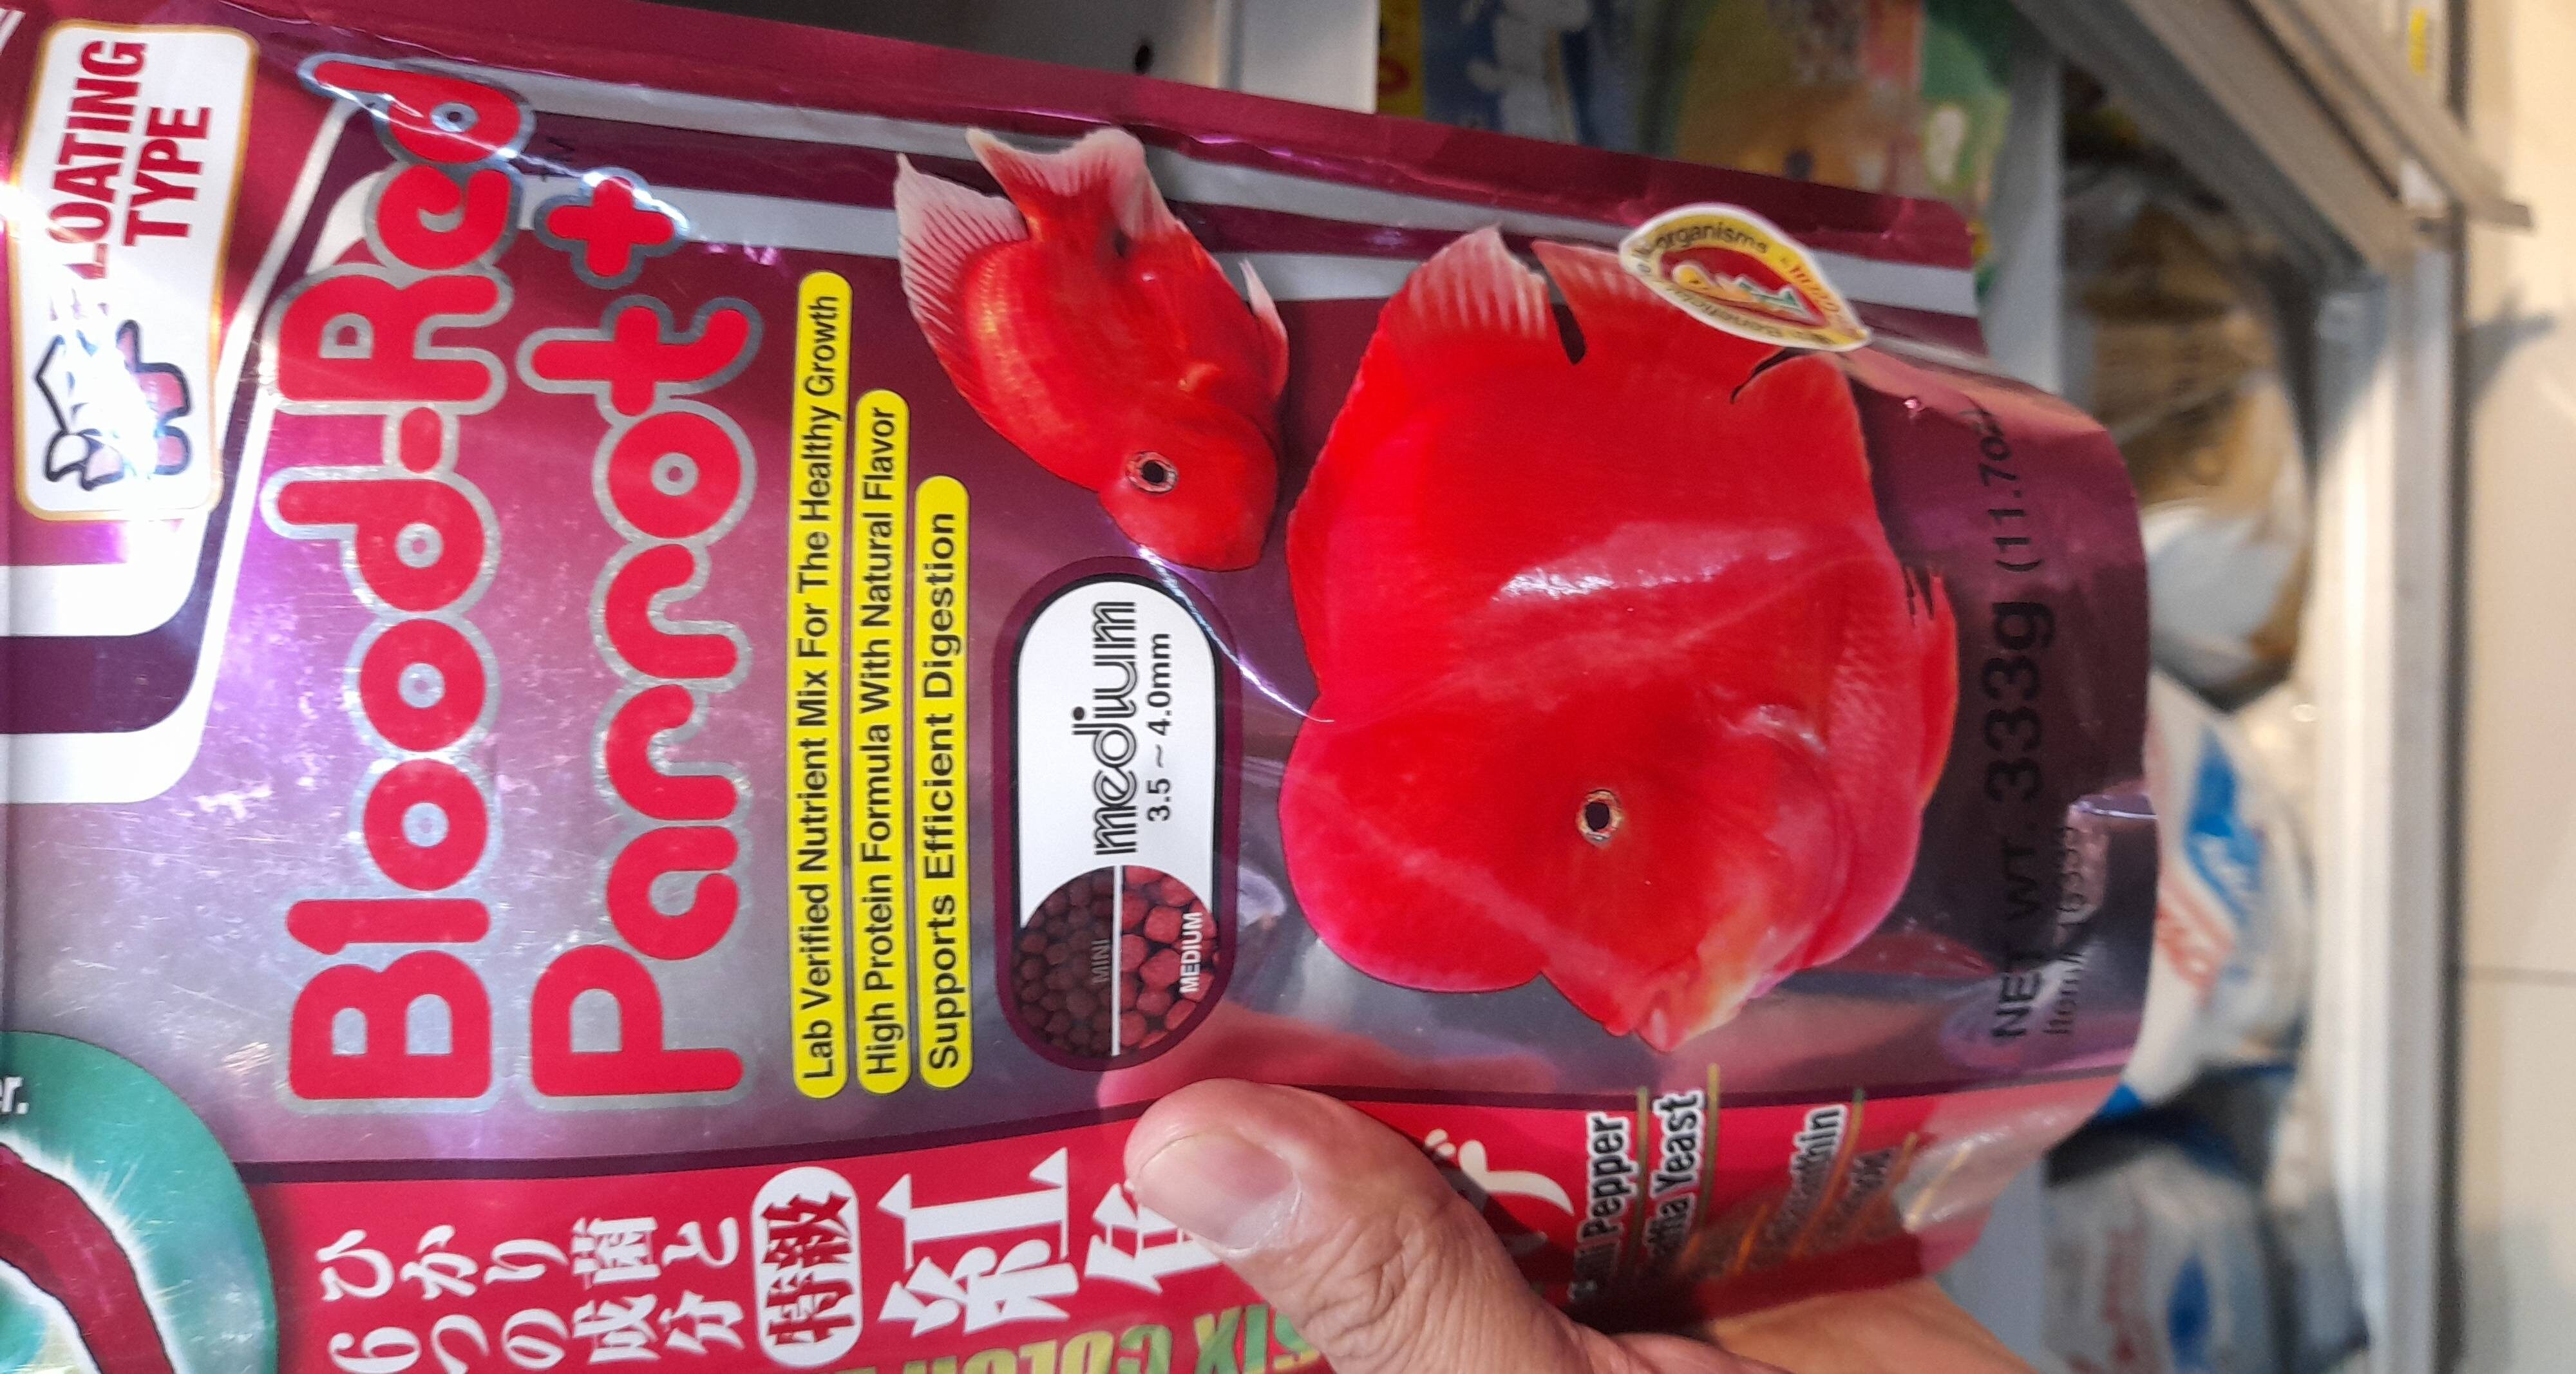 FISH FOOD BLOOD RED PARROT+ MED 333GR - Product - en